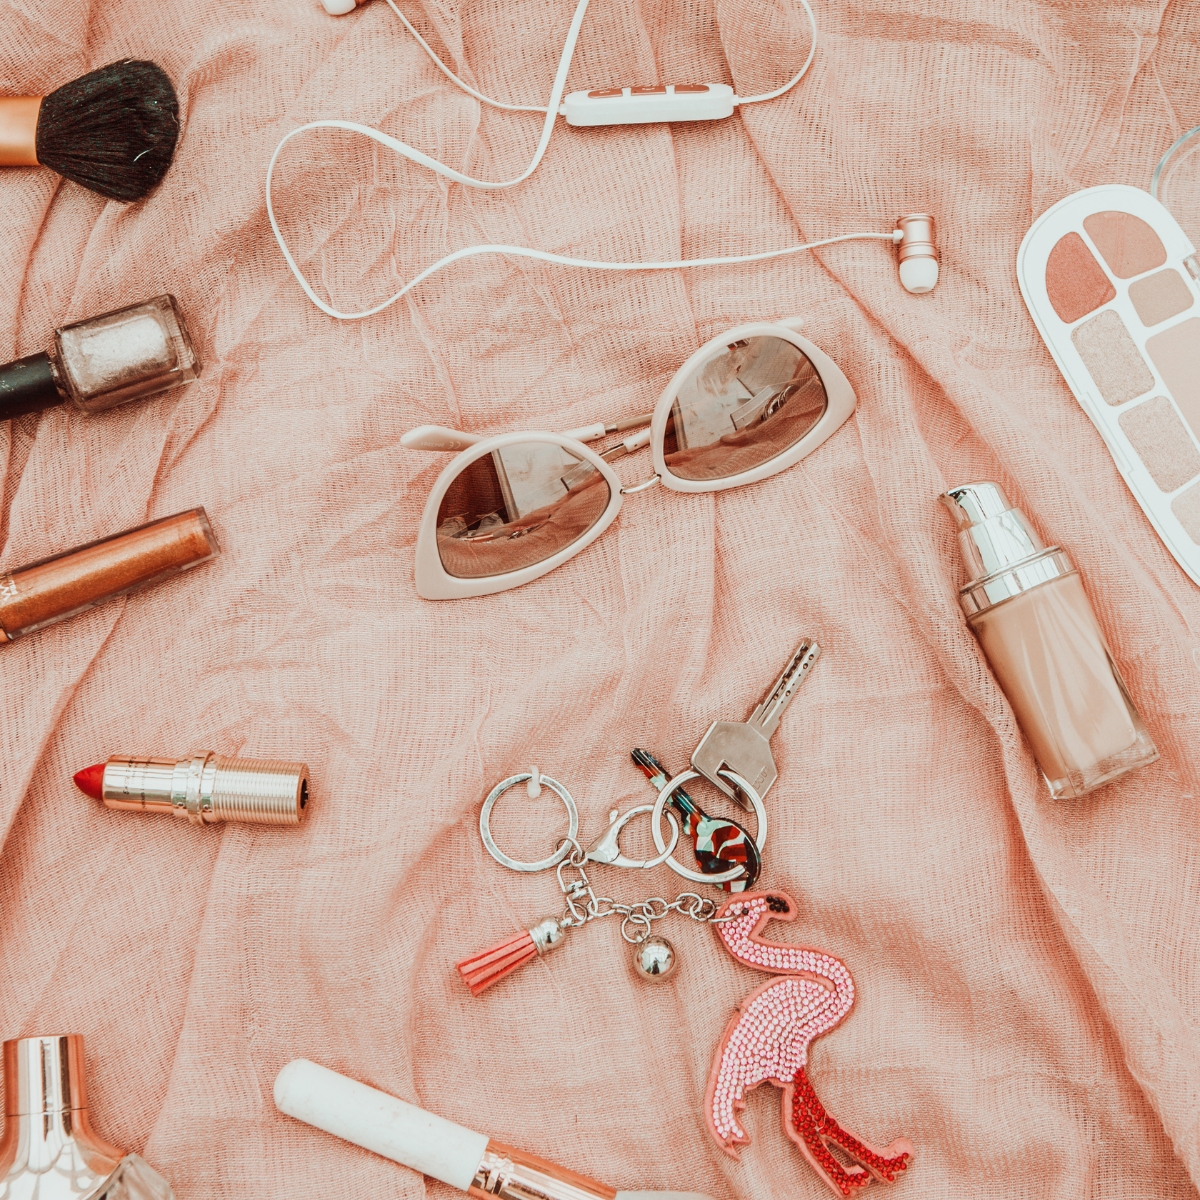 Shop Remi Bader's Favorite Loungewear Picks From Pink